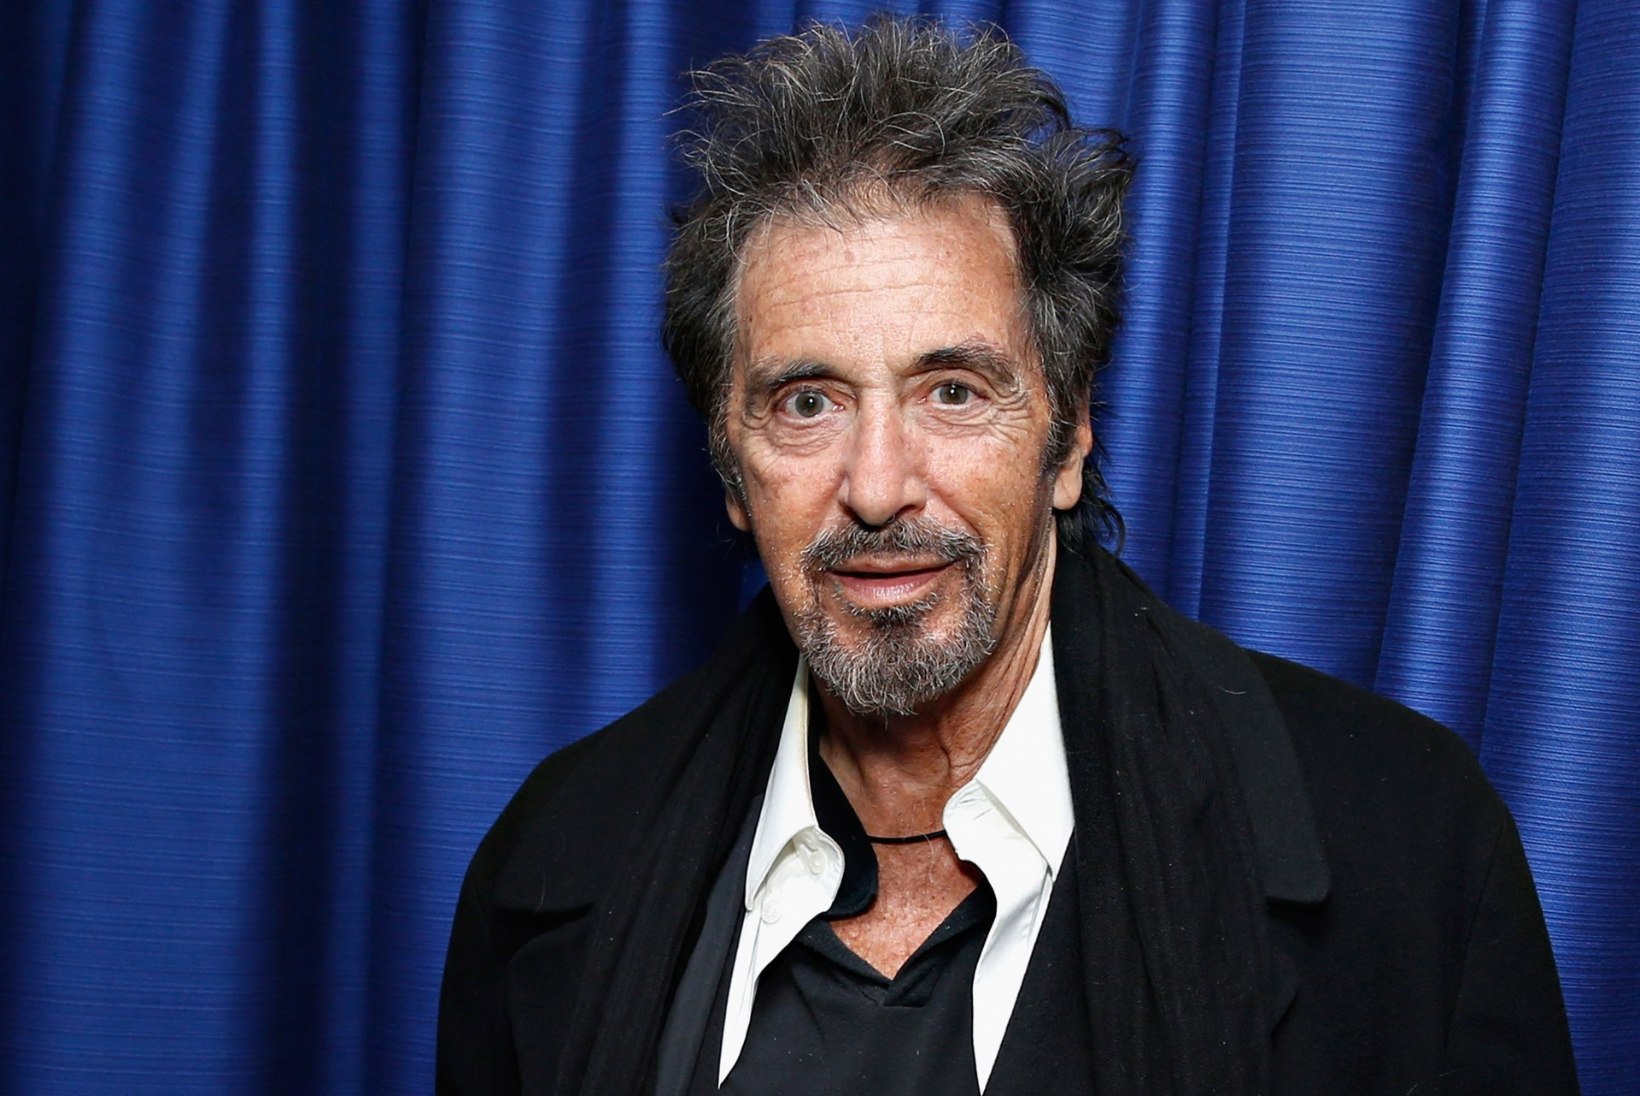 78aastane Al Pacino semmib 39aastase näitlejatariga